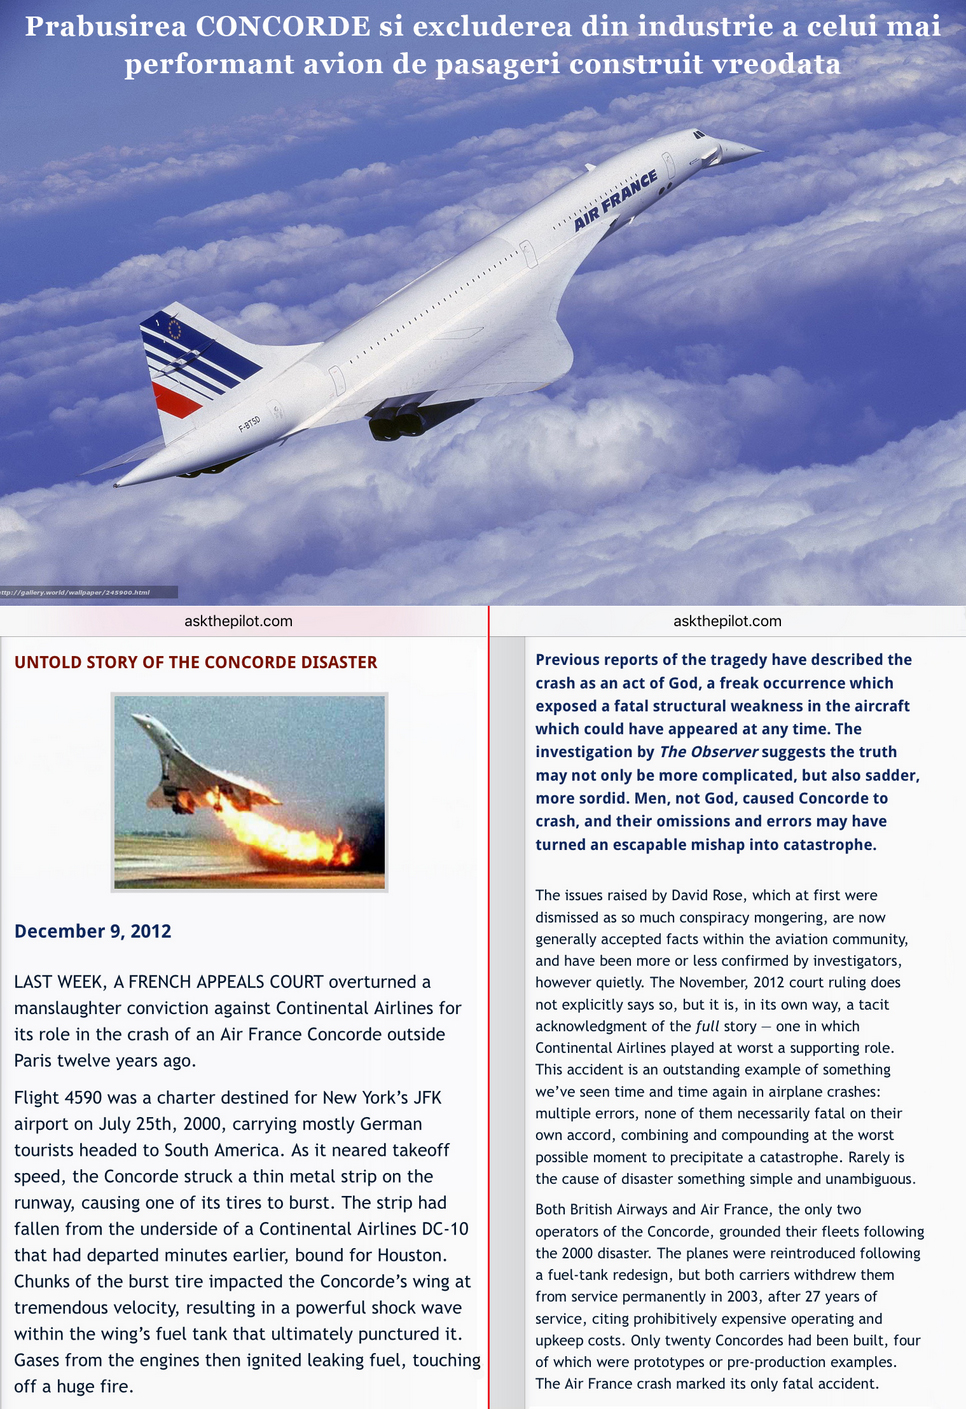 Prabusirea Concorde si excluderea din industrie a celui mai performant avion de pasageri construit vreodata